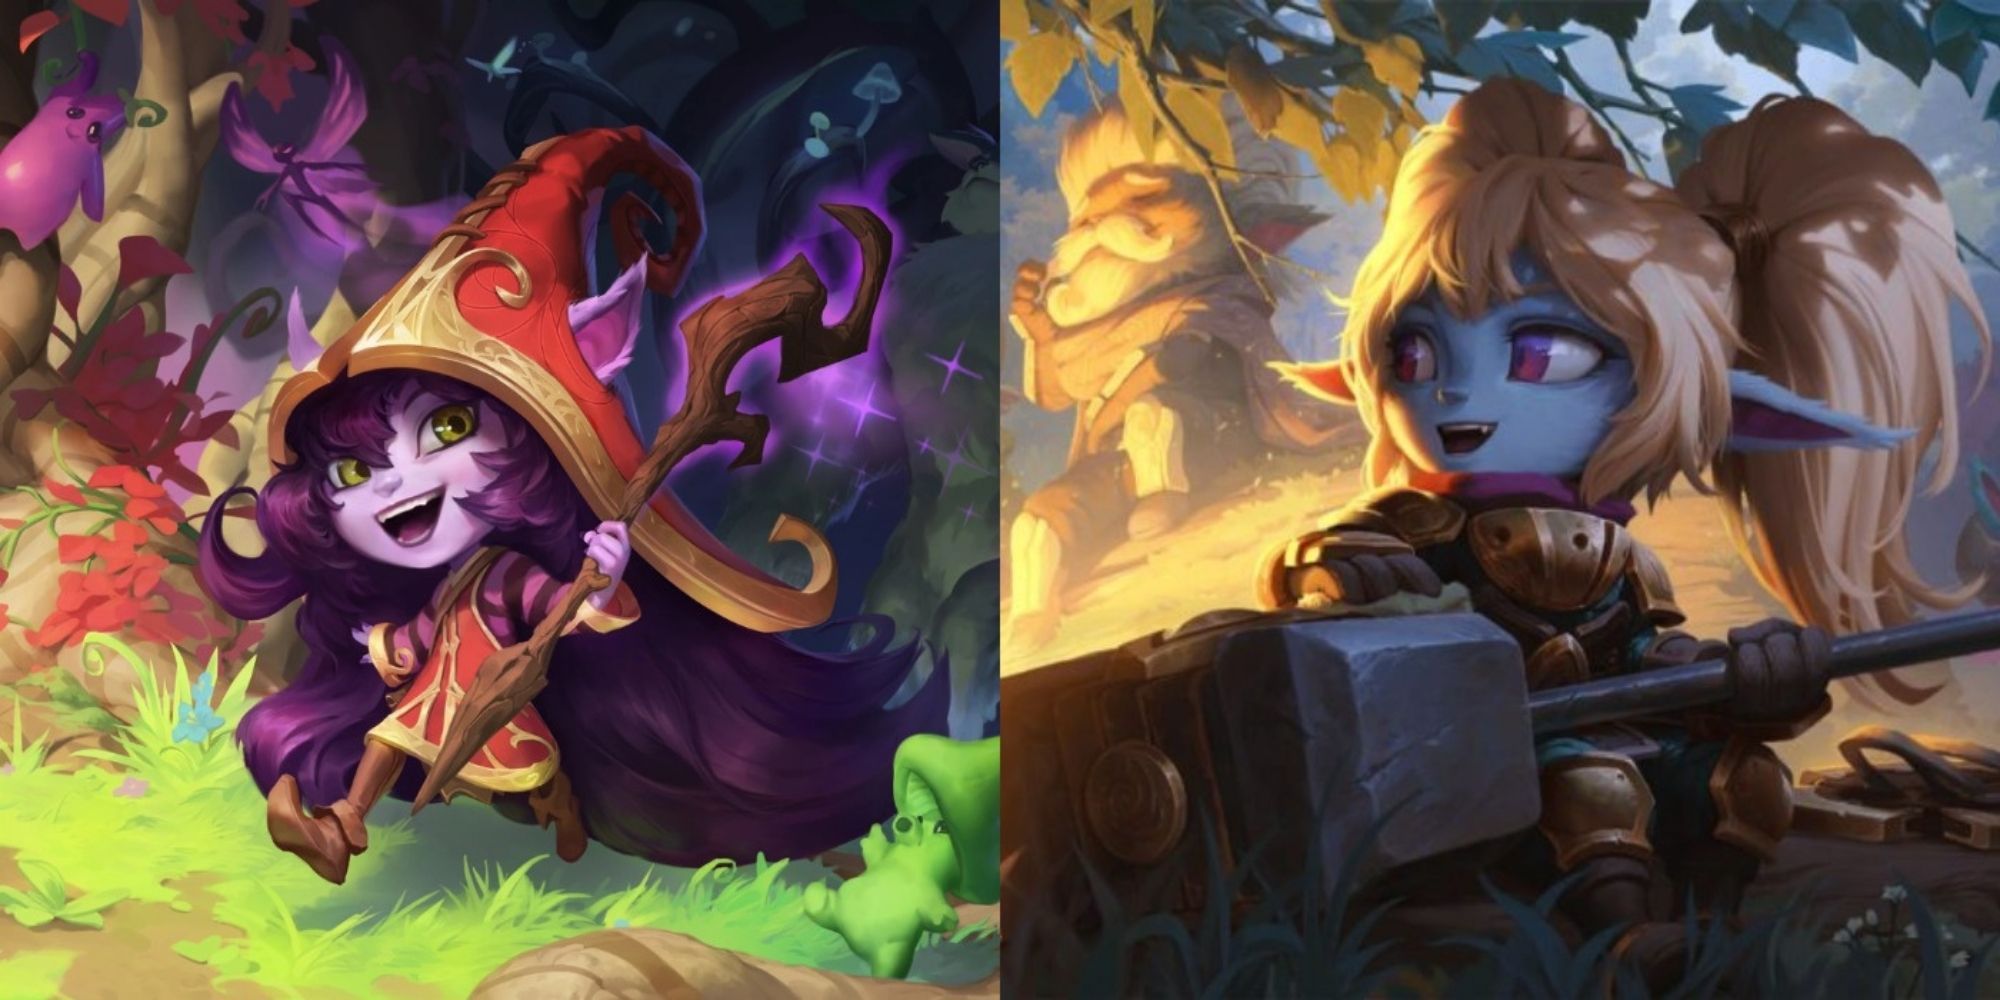 Split image showing Lulu and Poppy in Legends of Runeterra